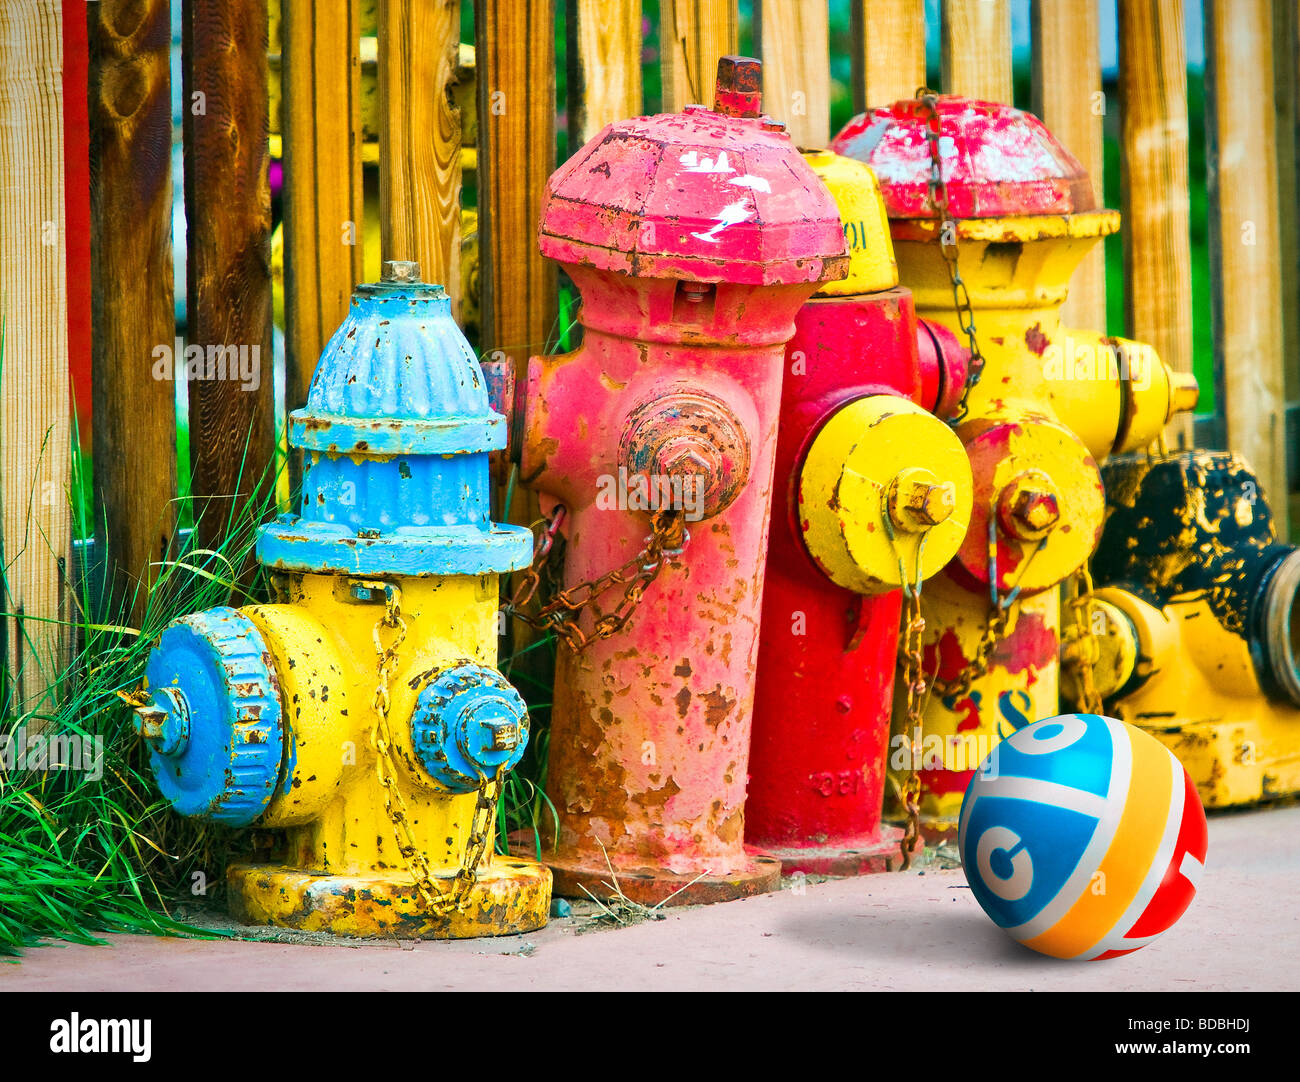 Bunte alte Hydranten bunt bemalt, sitzen auf Bürgersteig gegen Holzzaun und des Kindes Gummiball. Stockfoto